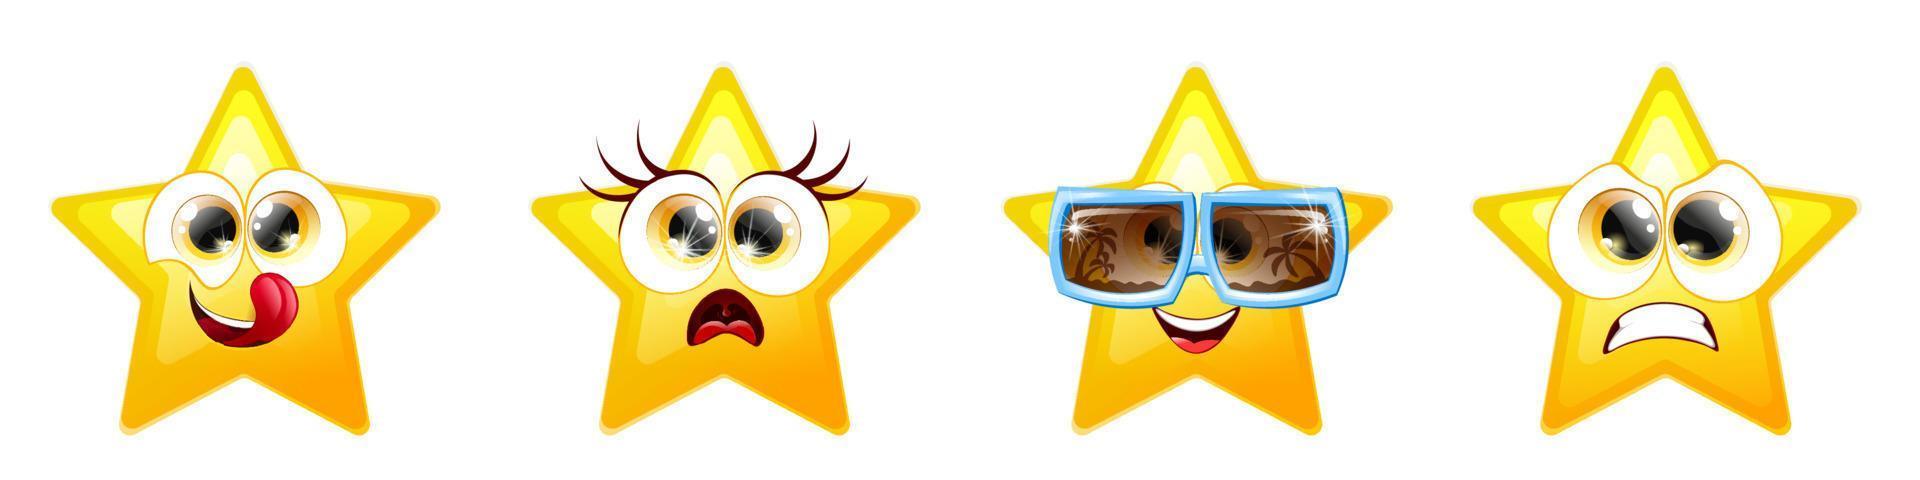 emoji estrella 2 vector